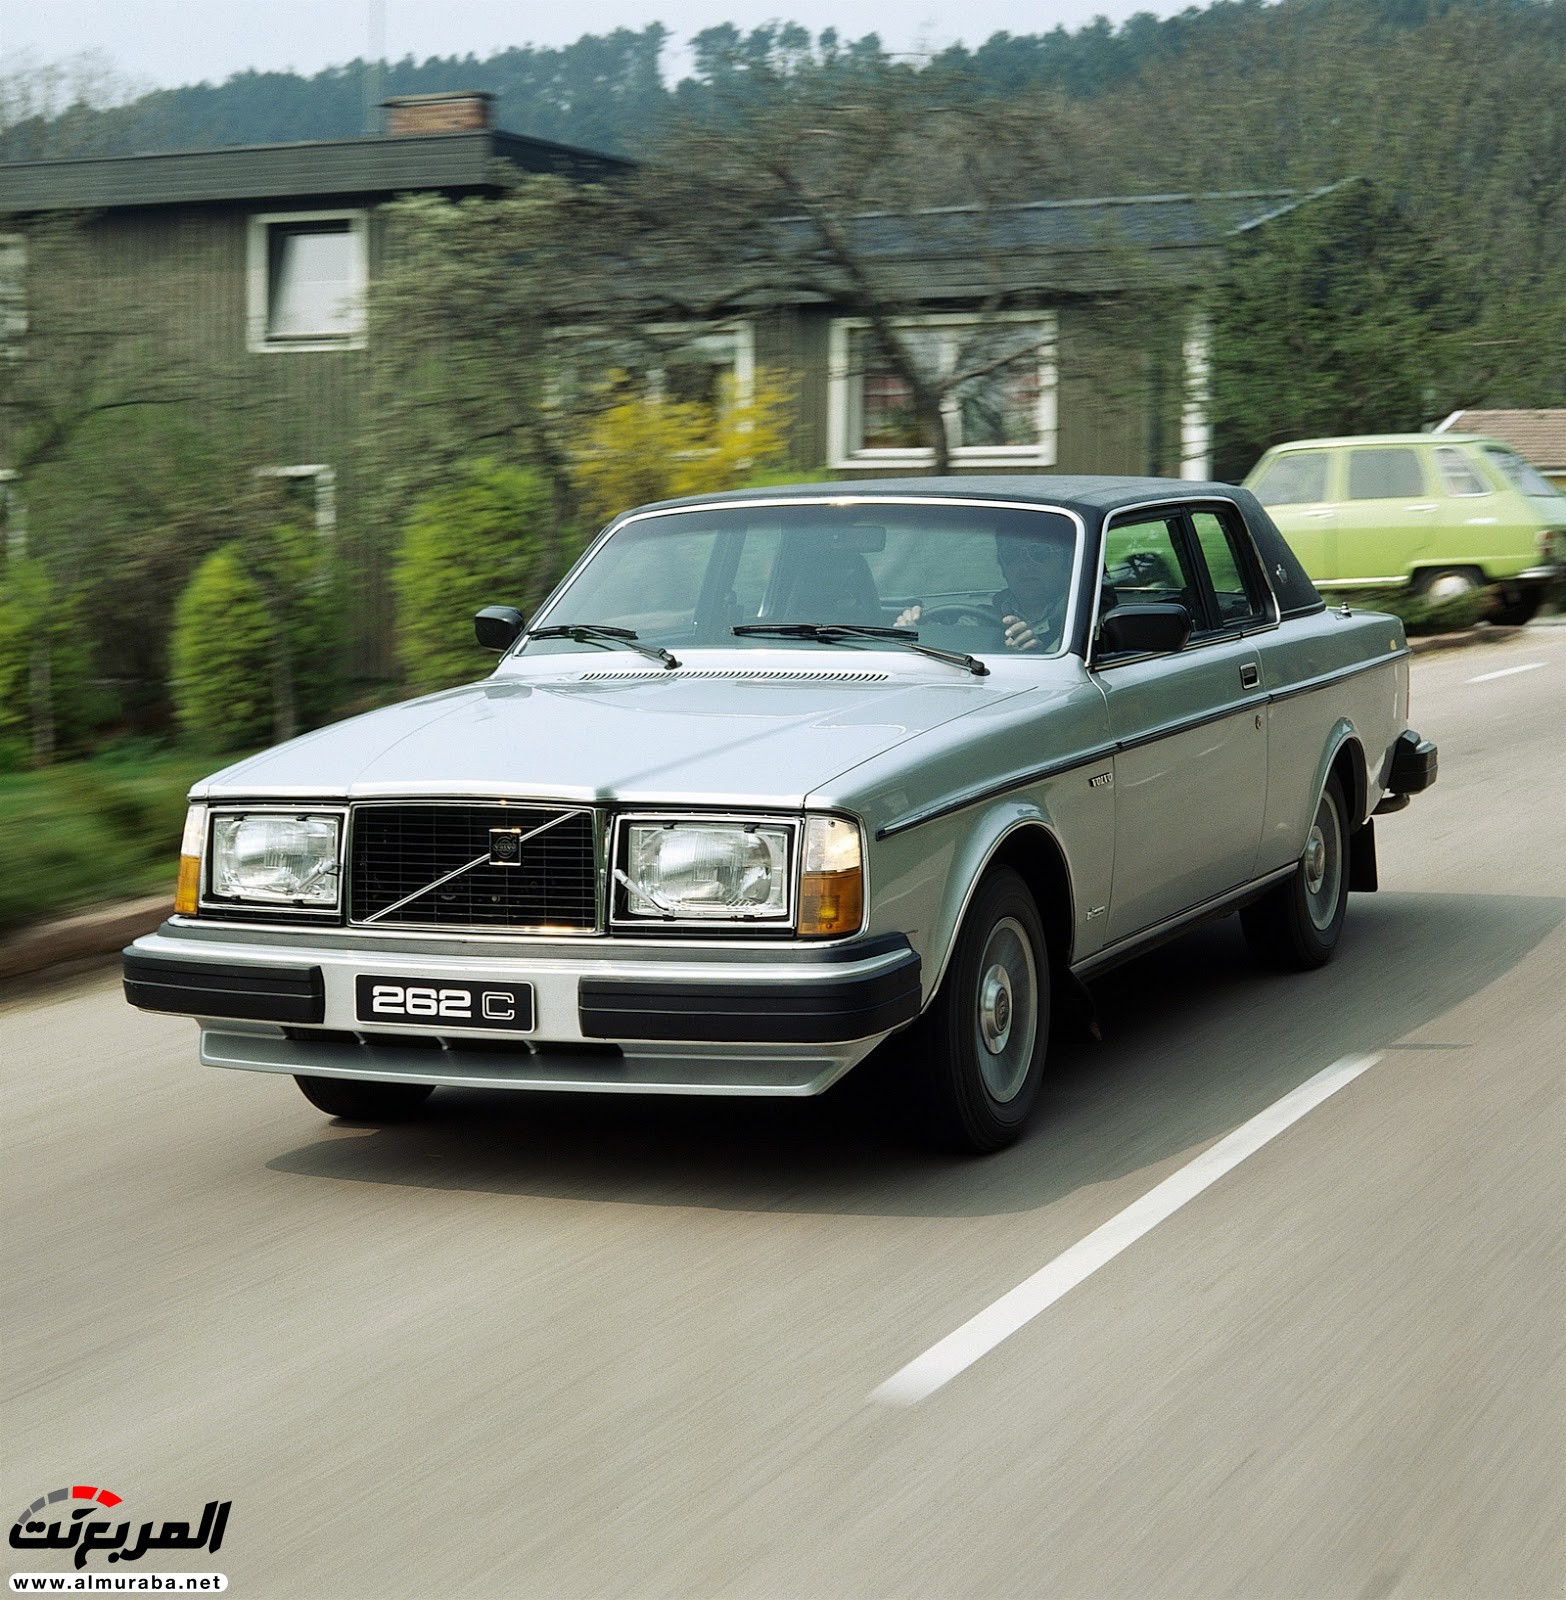 ذكرى مرور أربعين عام على طرح "فولفو" 262C الكوبيه Volvo 28